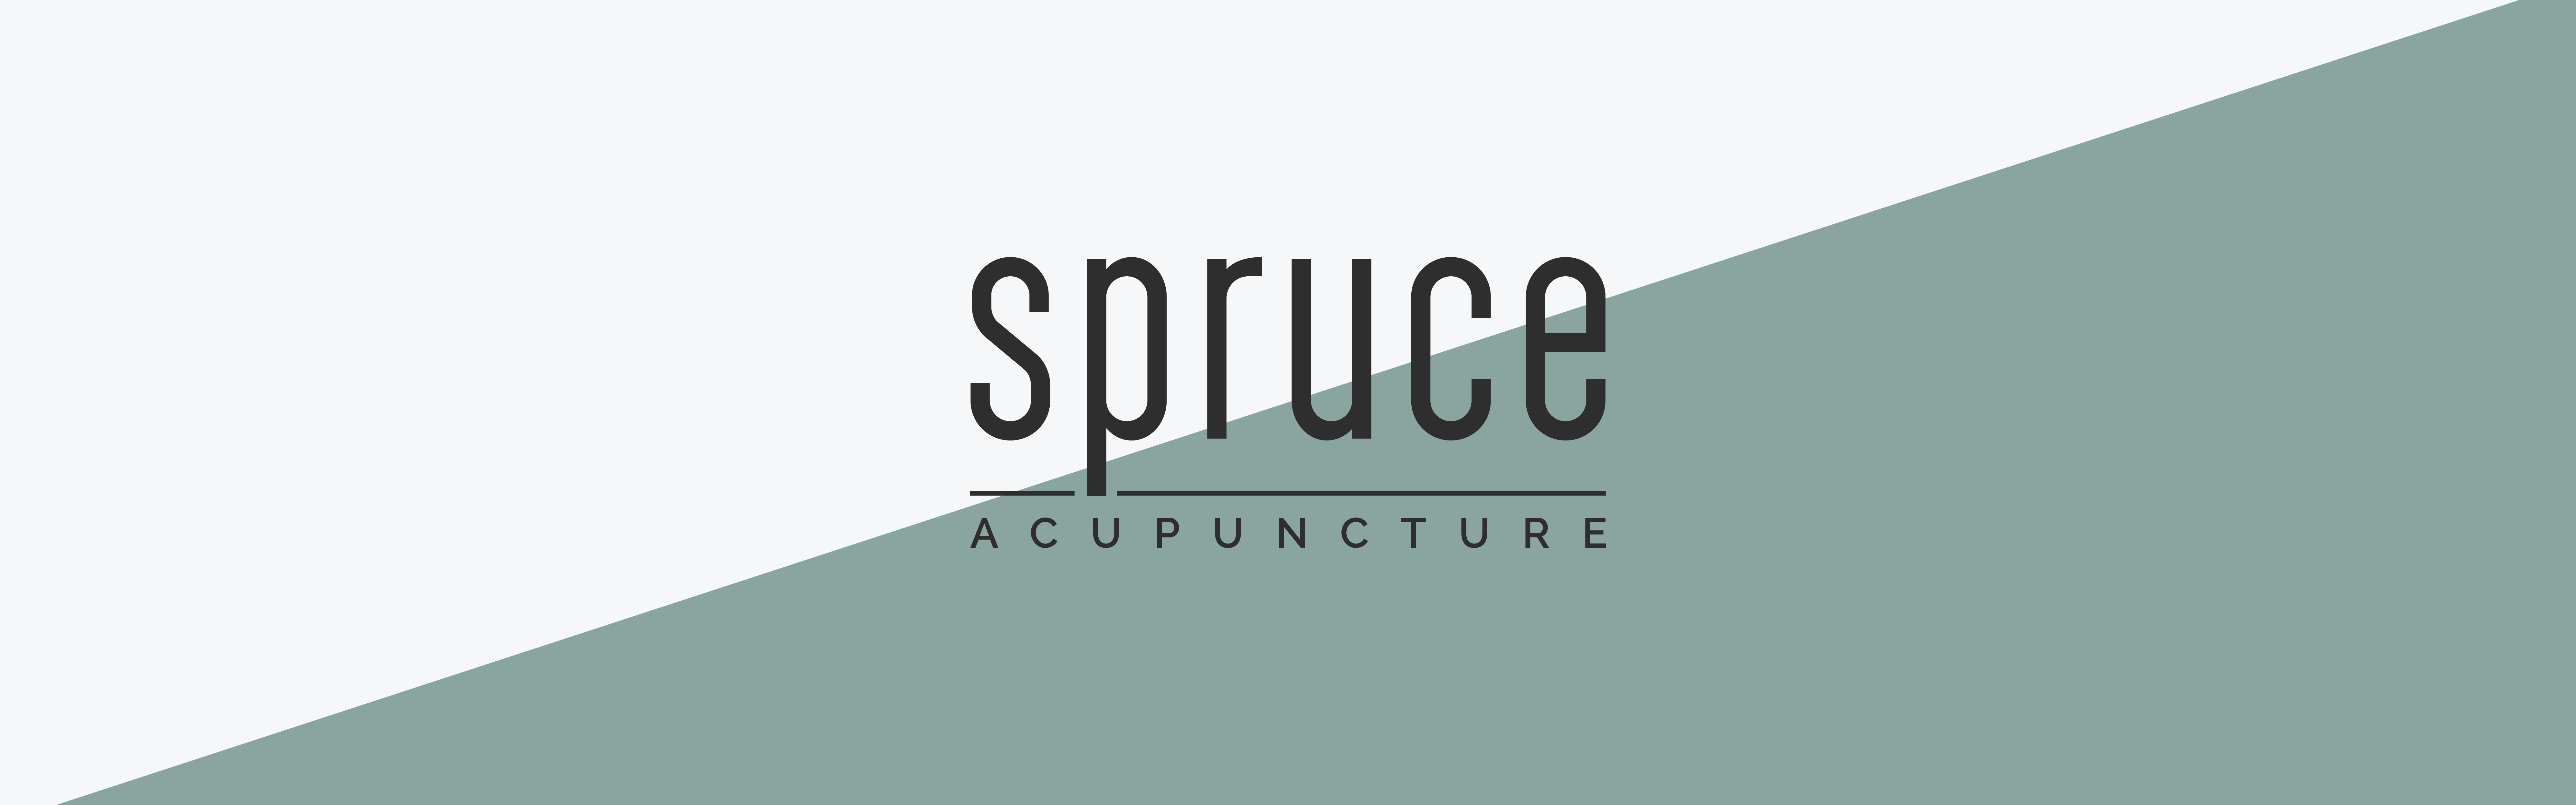 Acush Acupuncture Academy - Logo :: Behance